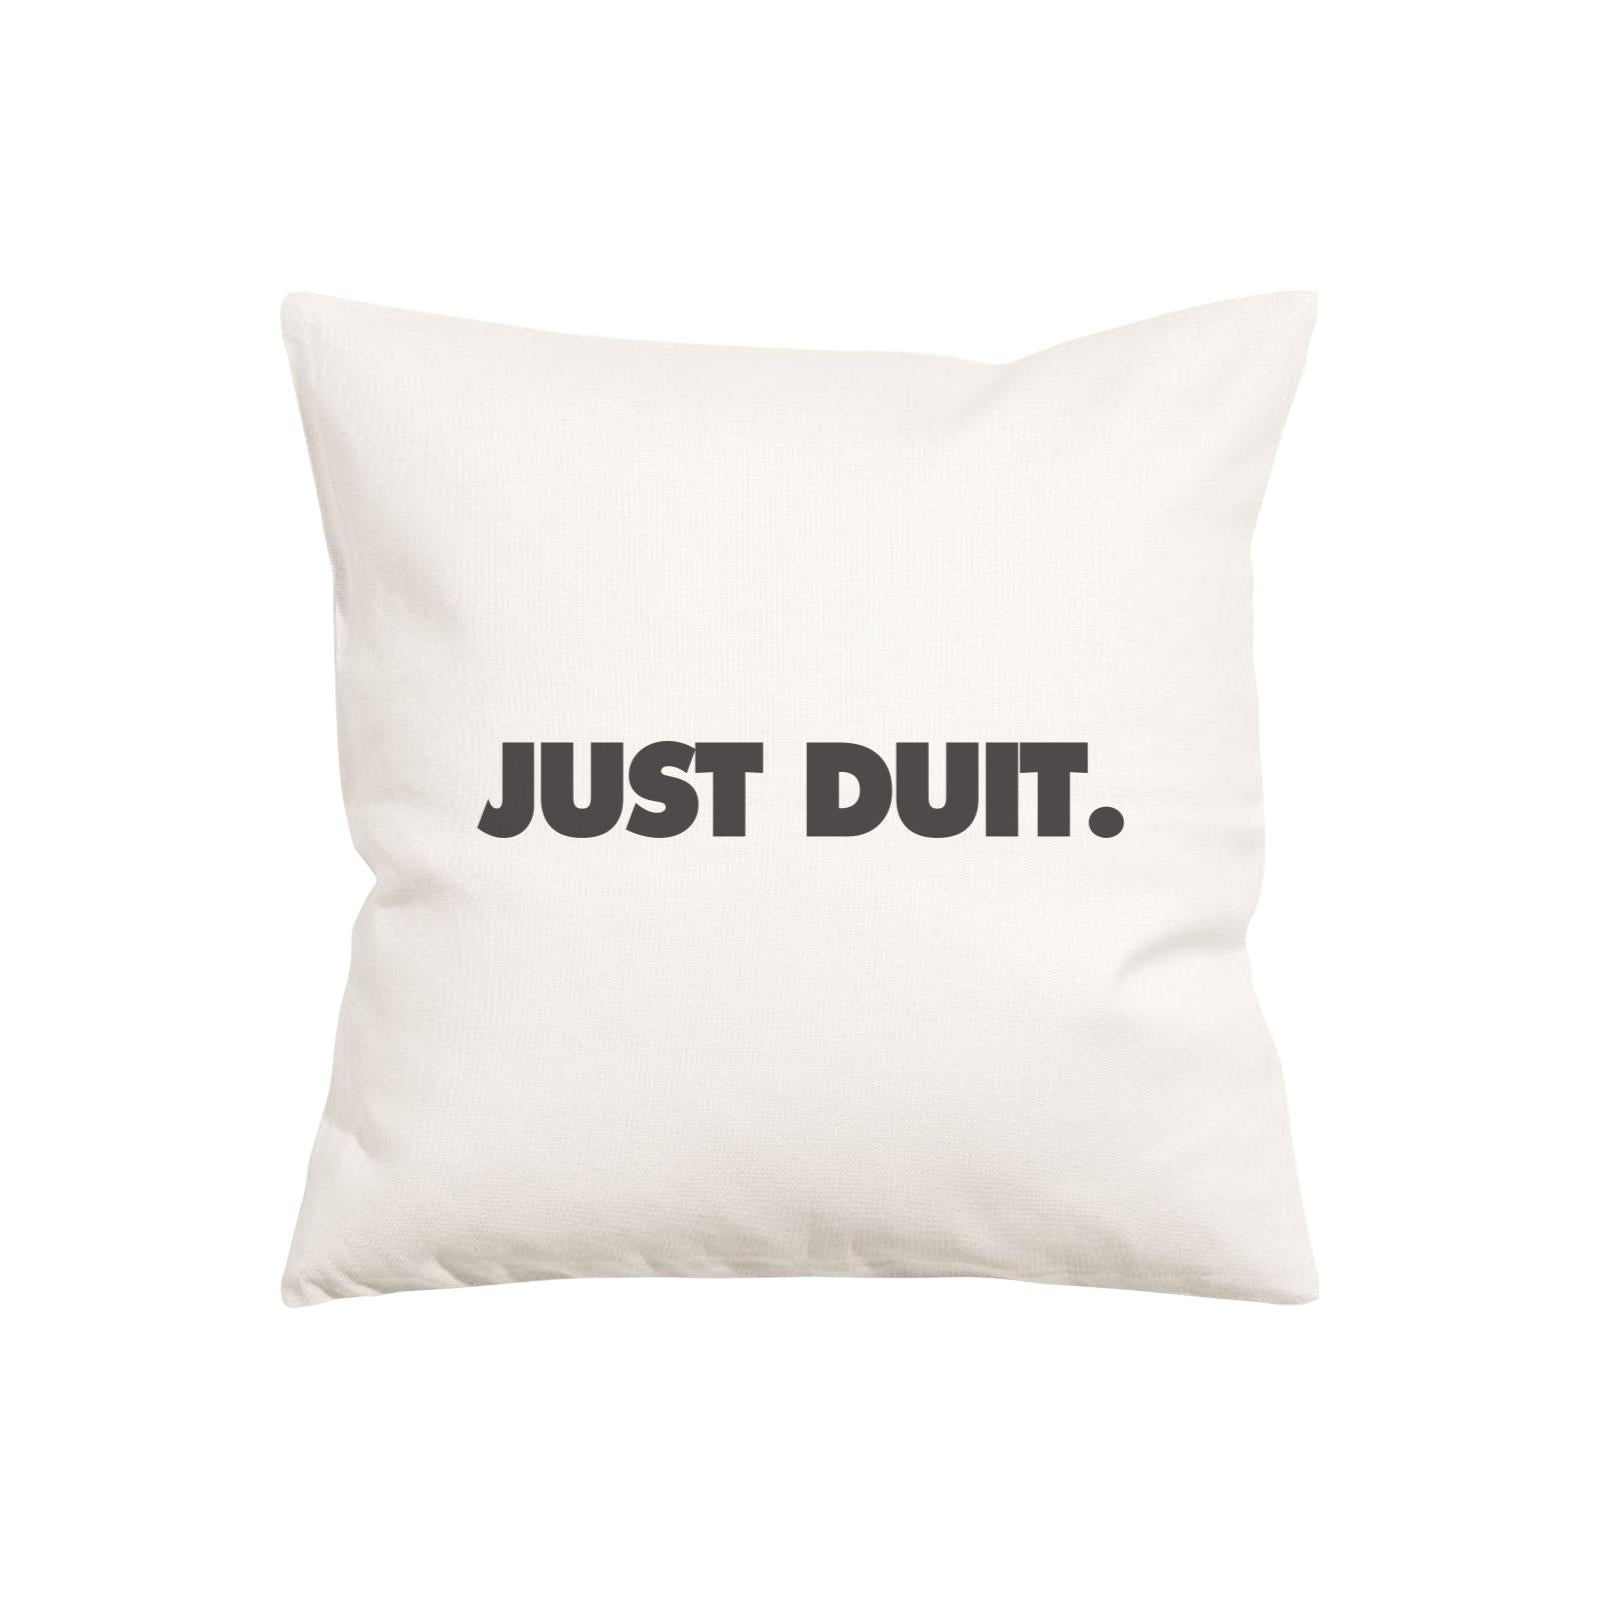 Slang Statement Just Duit Pillow Cushion